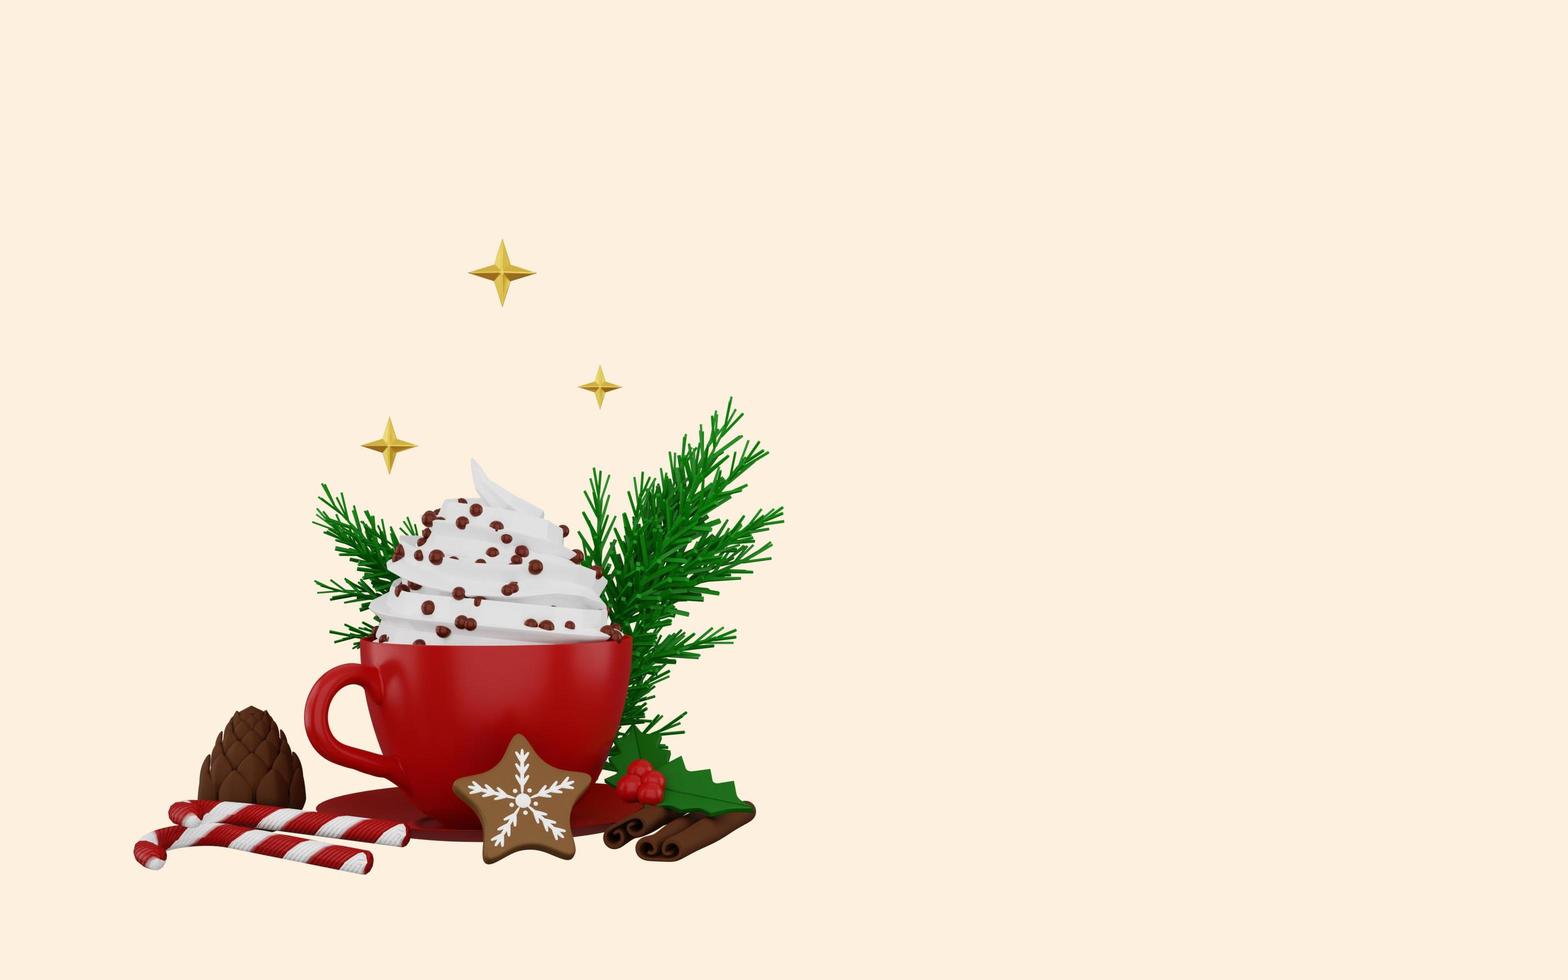 taza roja de chocolate caliente con crema, canela en rama, galletas y adornos navideños foto